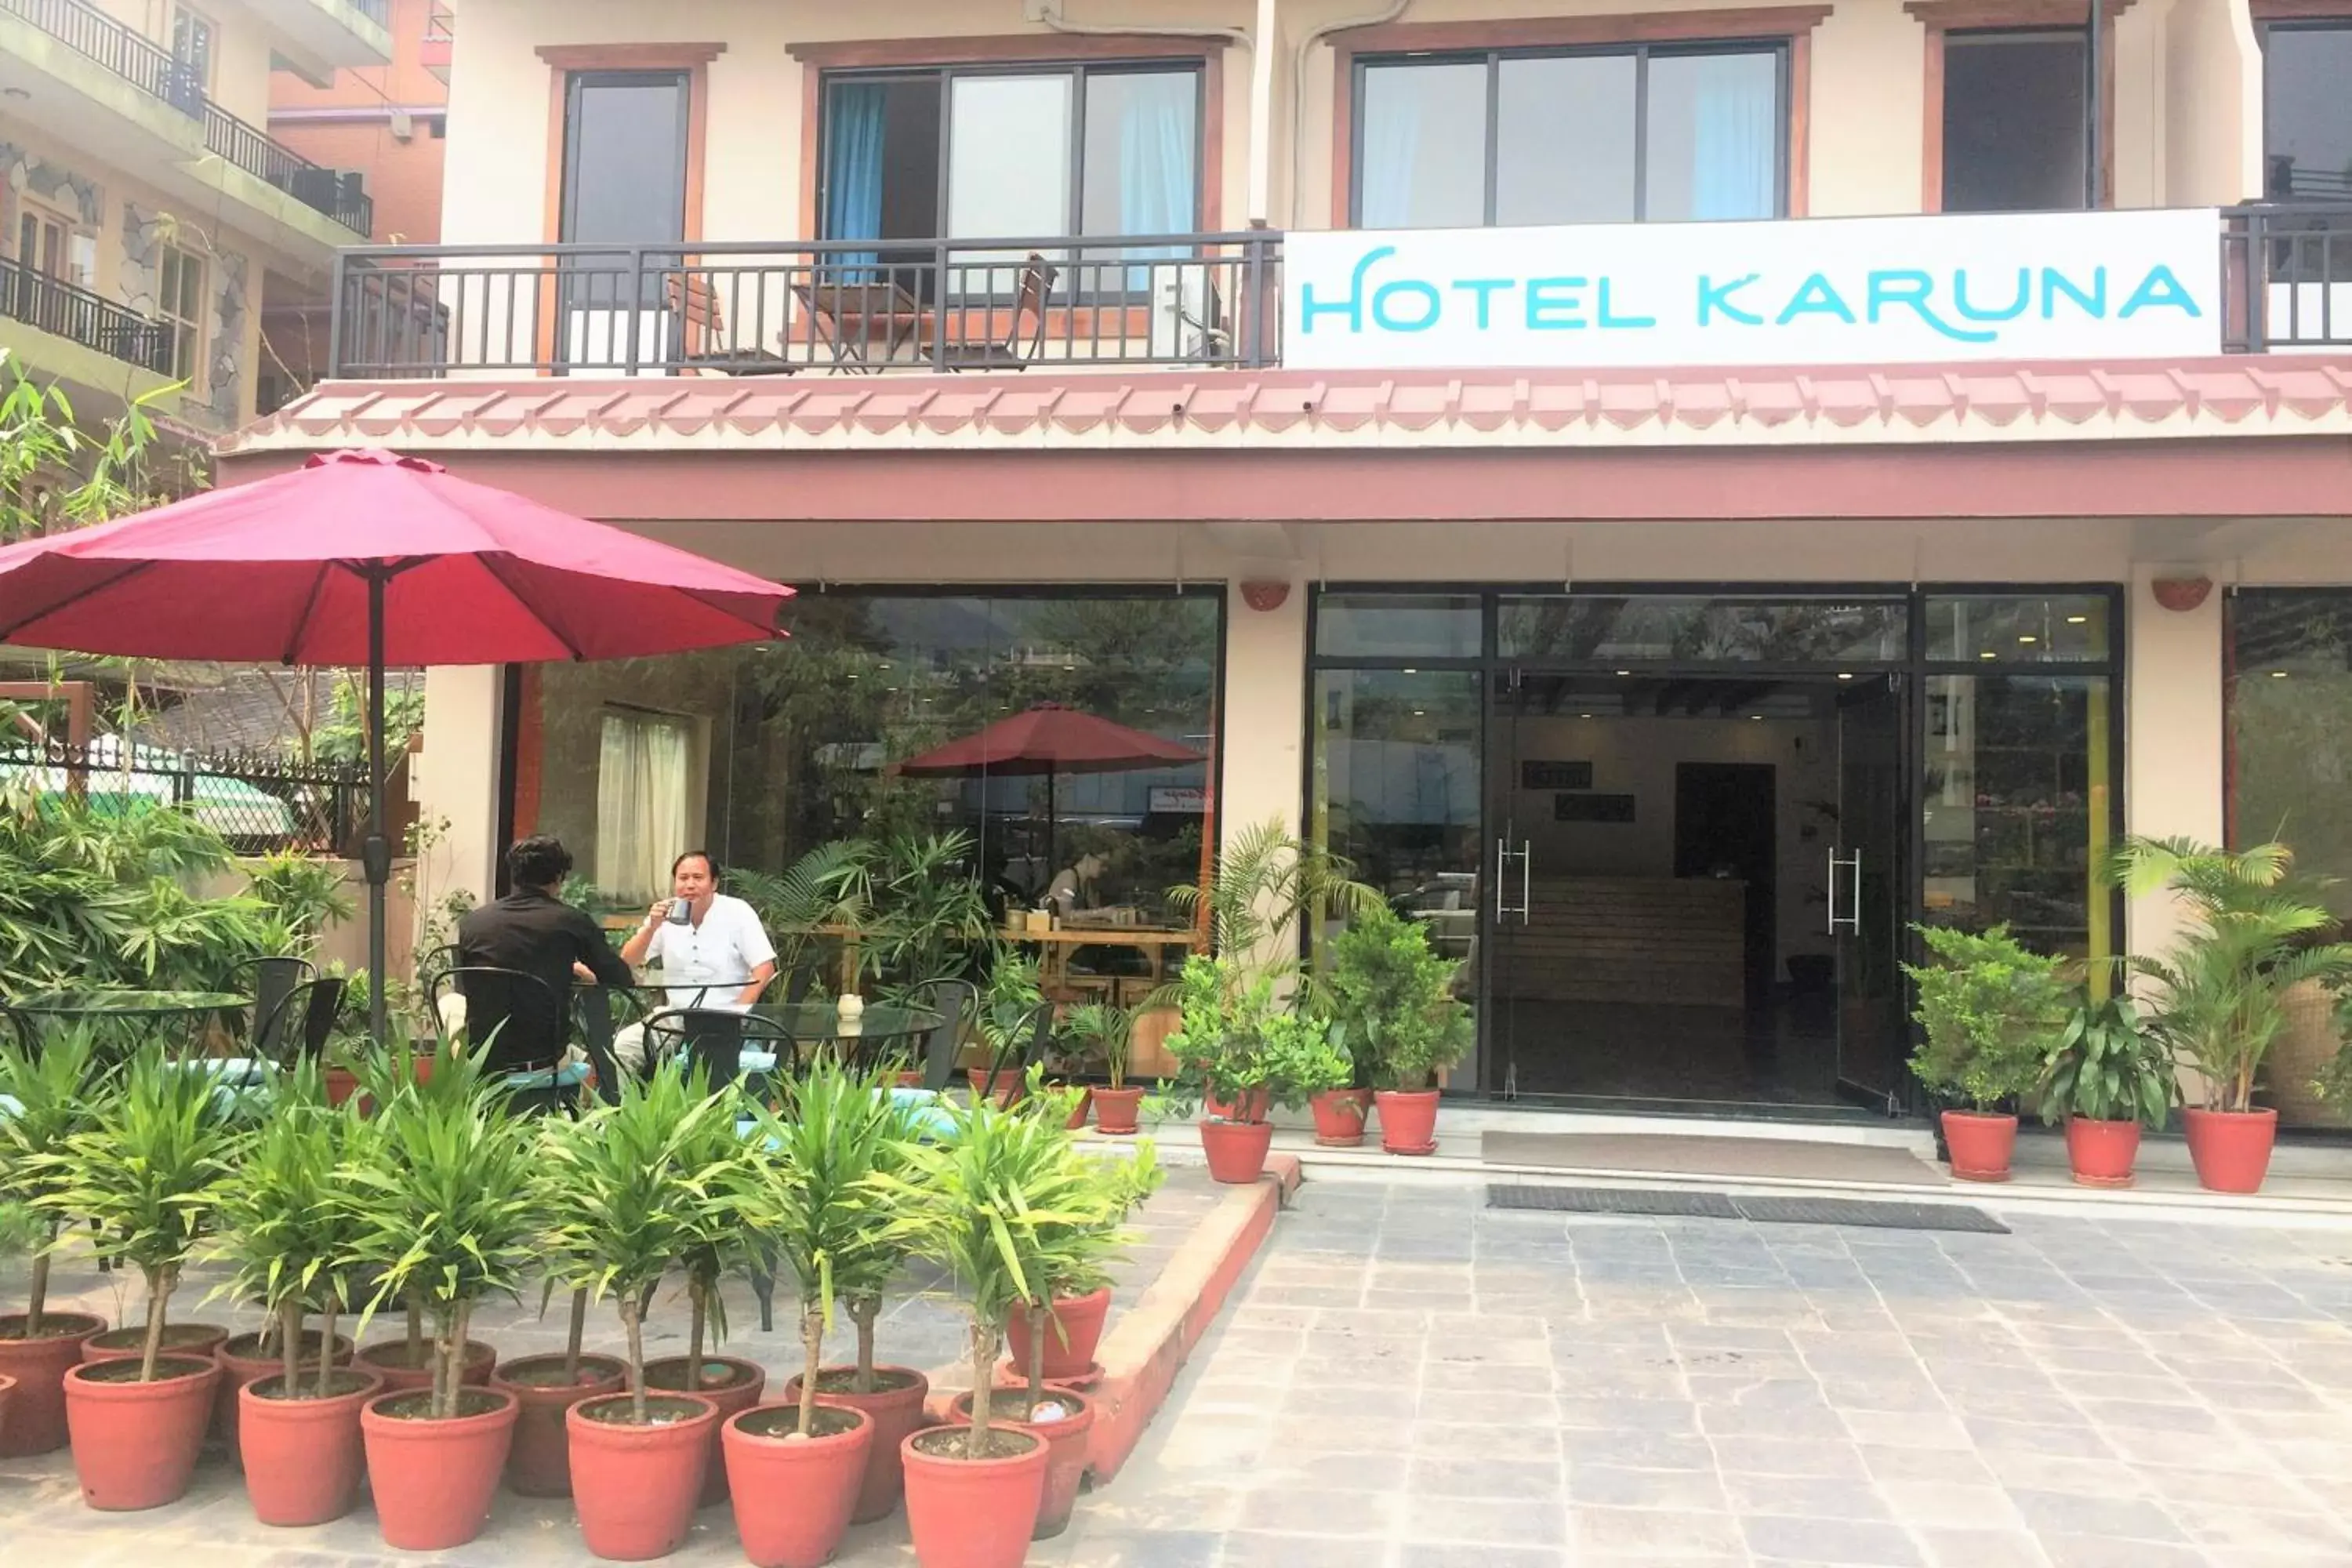 Facade/entrance in Hotel Karuna